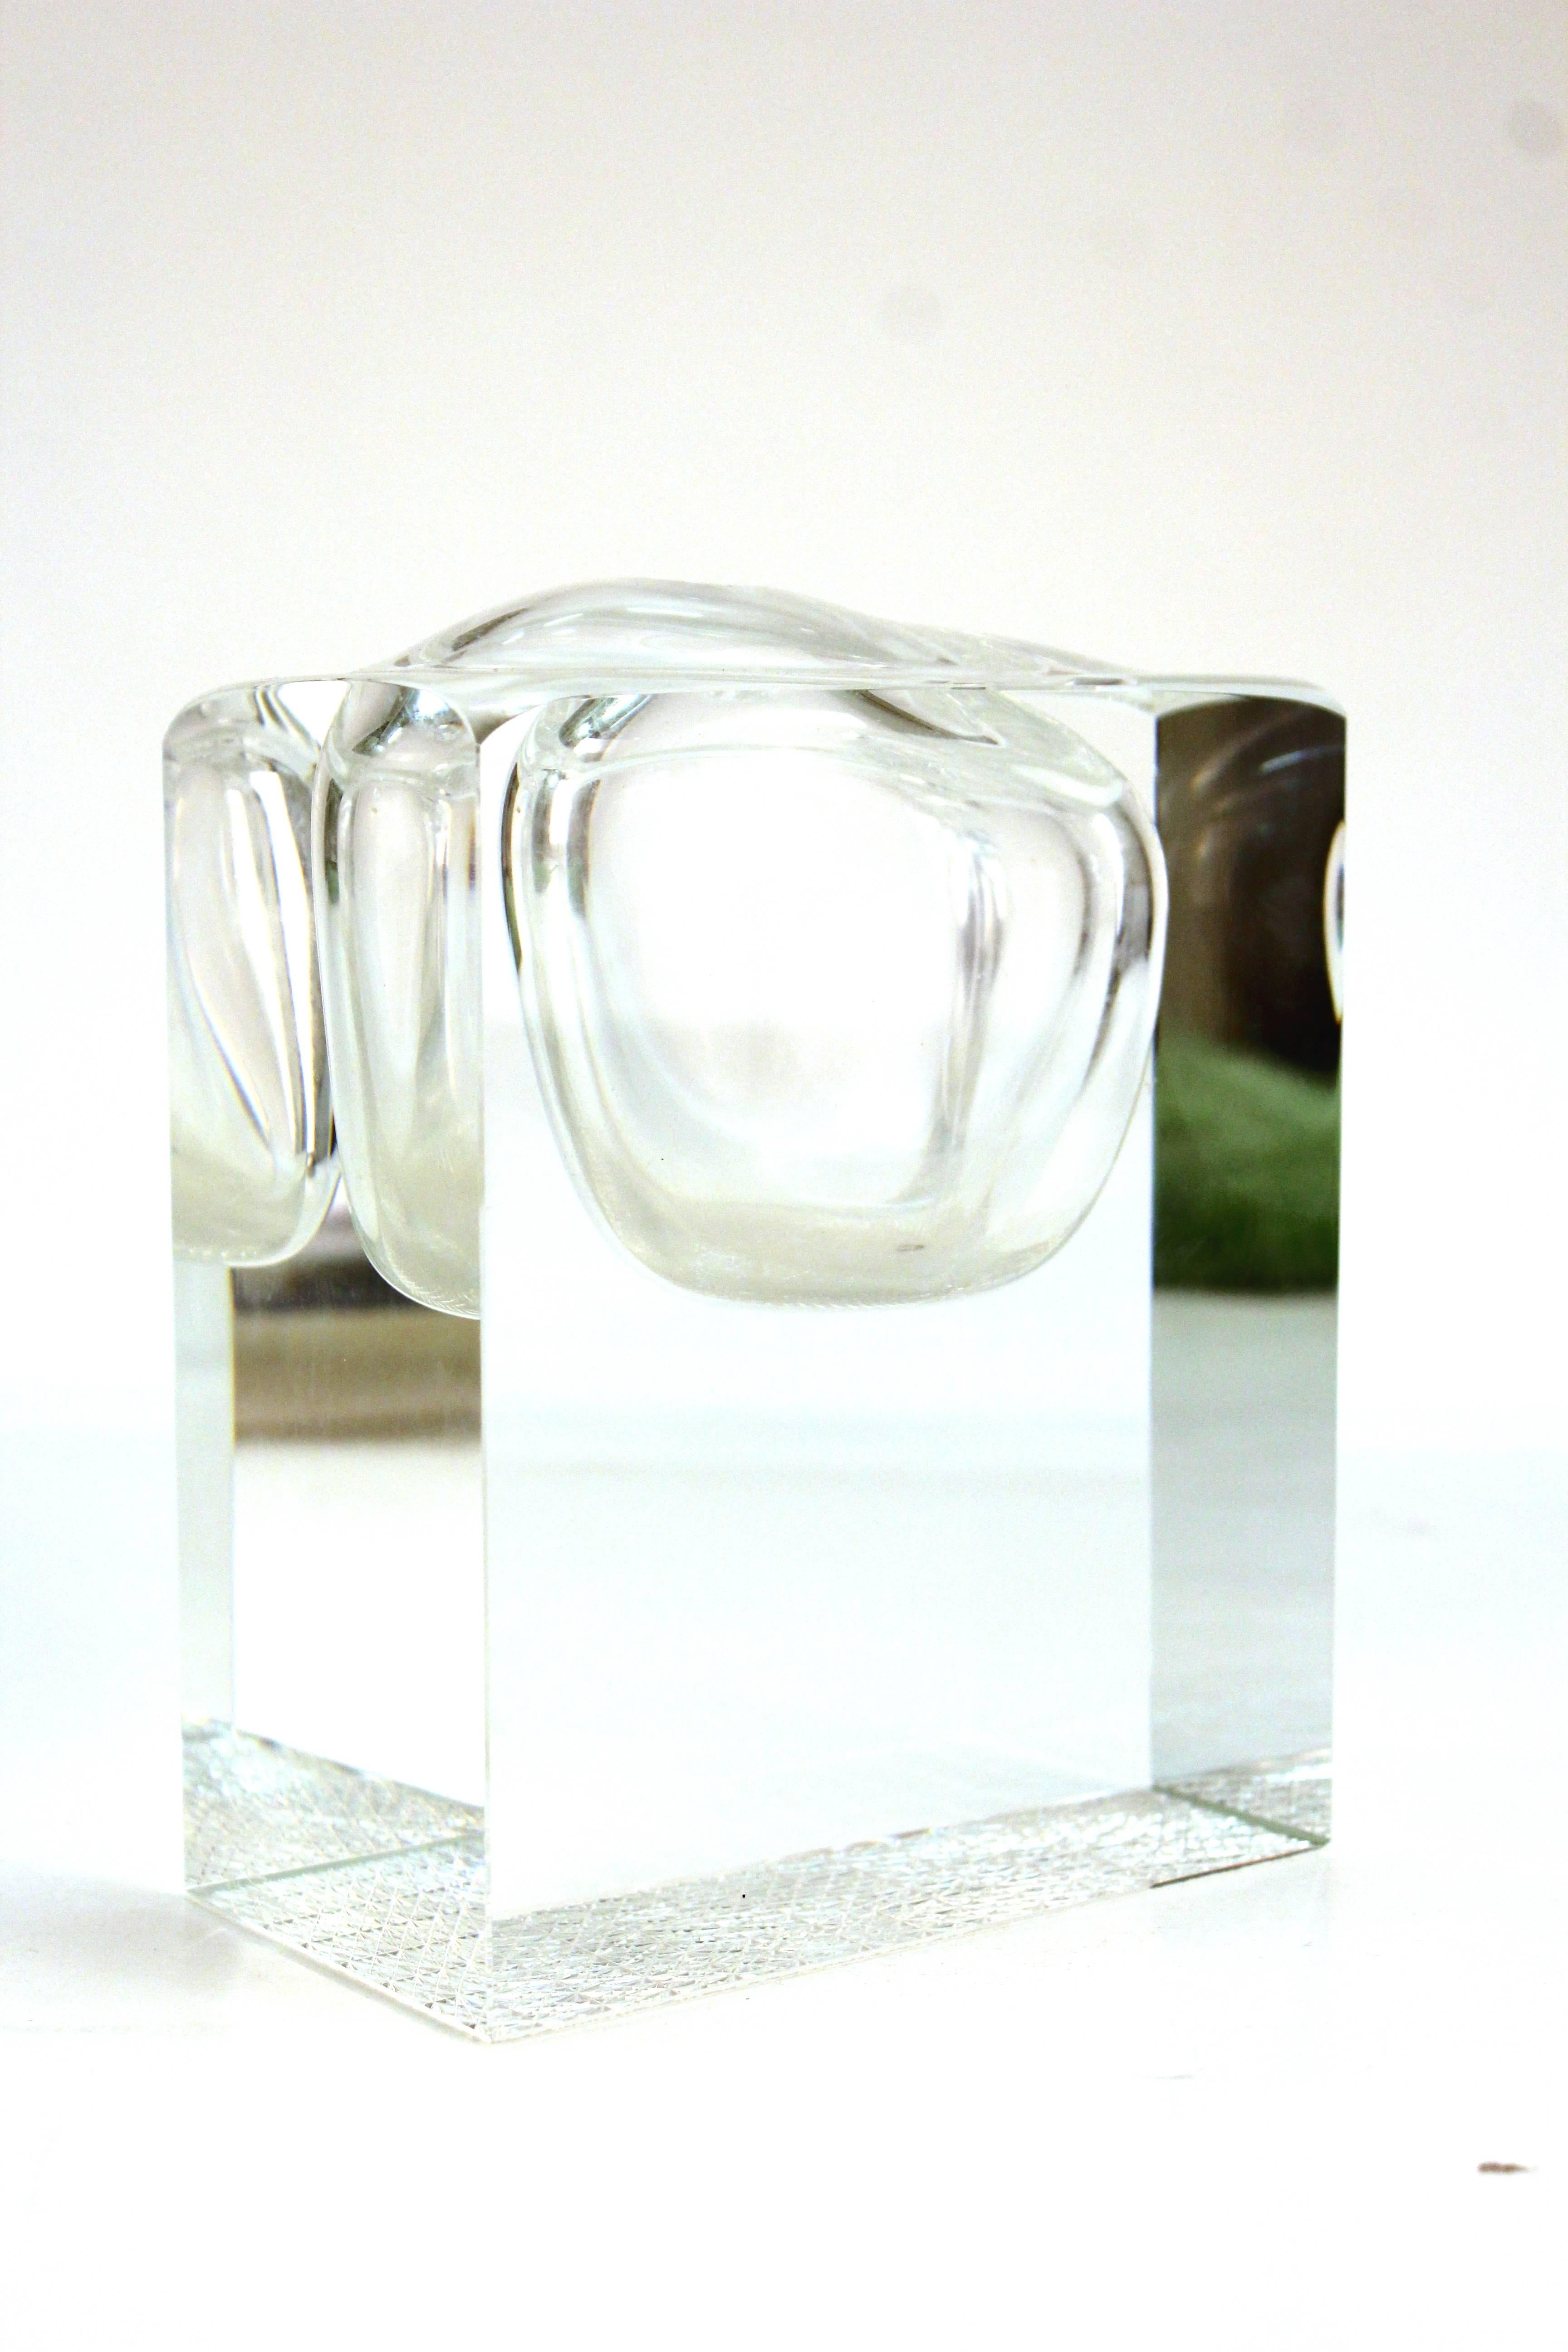 Geometrische Vase aus Bleikristall aus der Jahrhundertmitte. Geformt, um wie eine Blase in einem größeren Kristallblock auszusehen. Mit einem Loch an der Spitze, das groß genug für eine einzelne Blume ist. Das Stück ist unleserlich signiert. Trotz